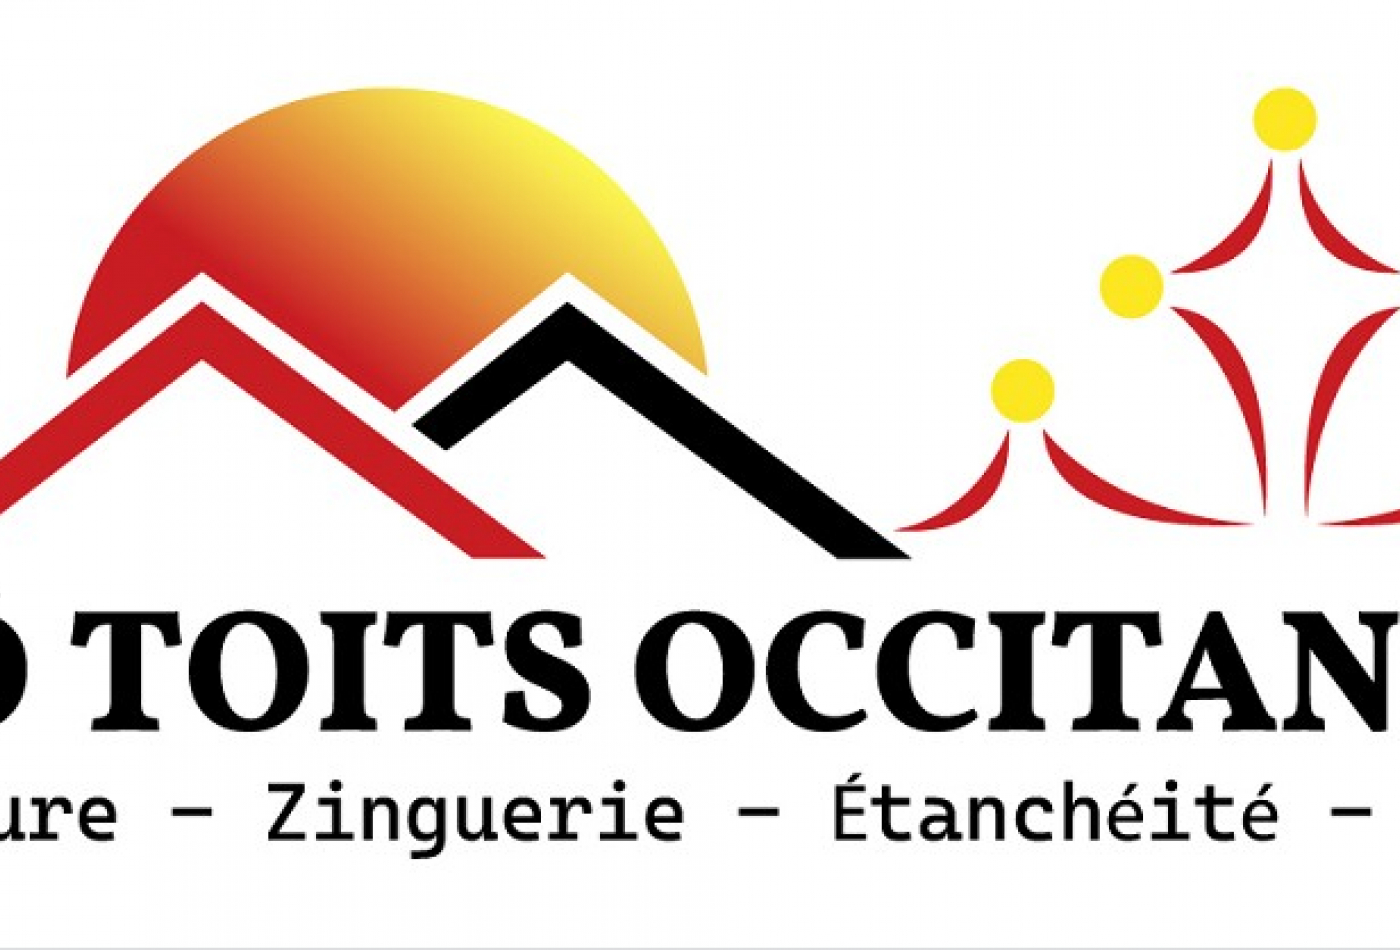 Ô toit occitans - couverture - zinguerie - etanchéité - bardage  Vends du sud